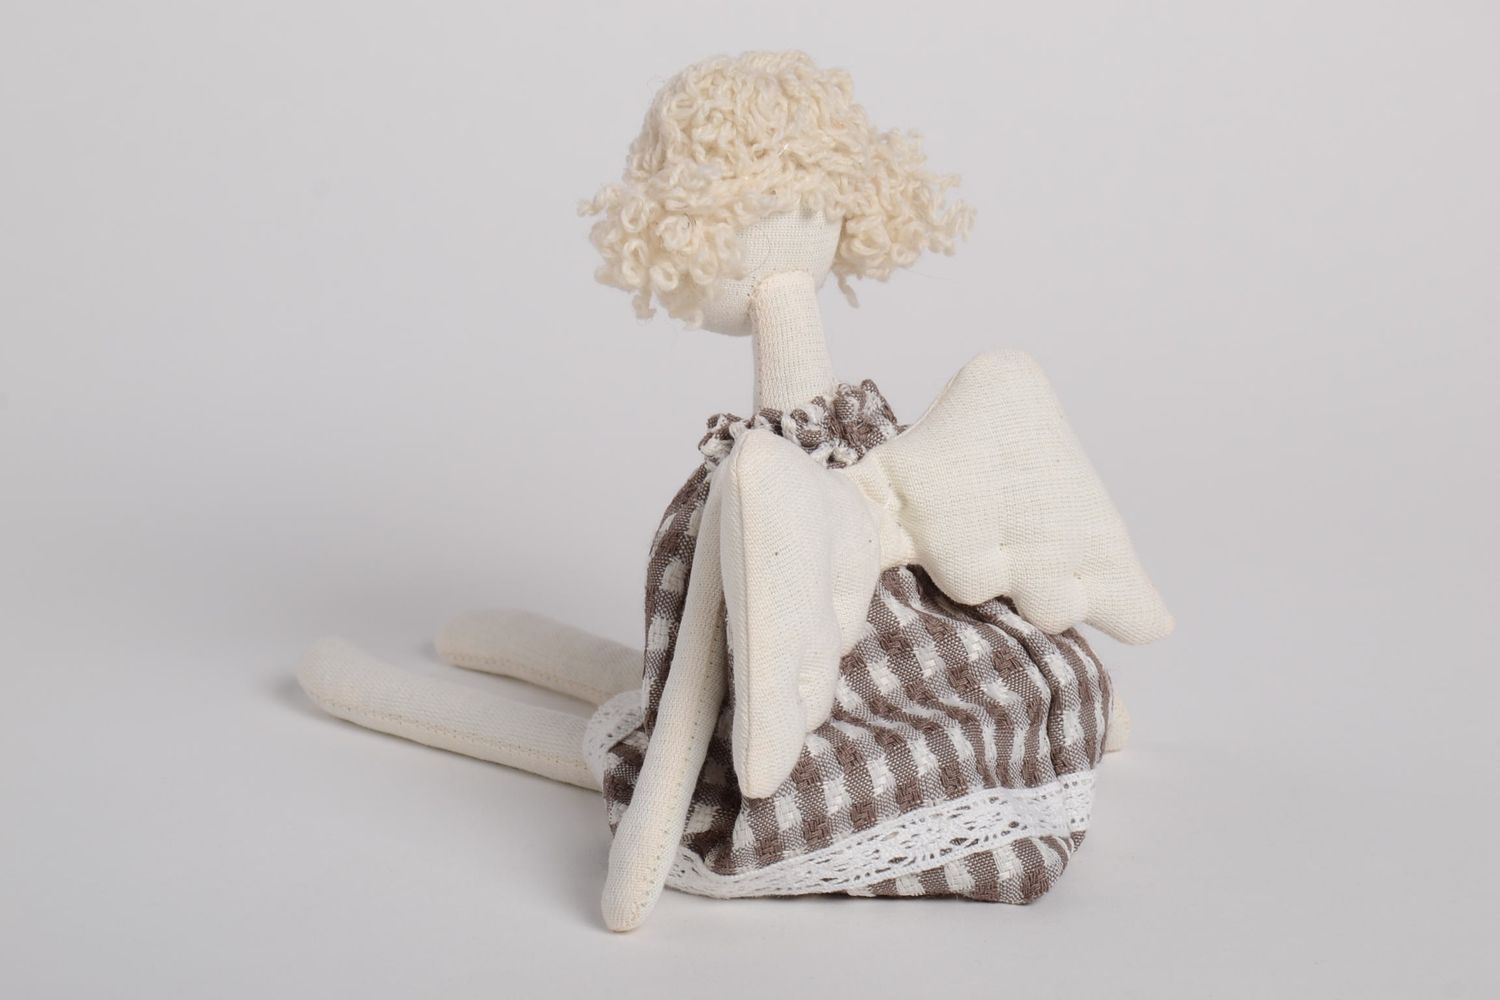 Handmade schöne Puppe Engel im karierten Kleid Designer Puppe Stoff Spielzeug  foto 4